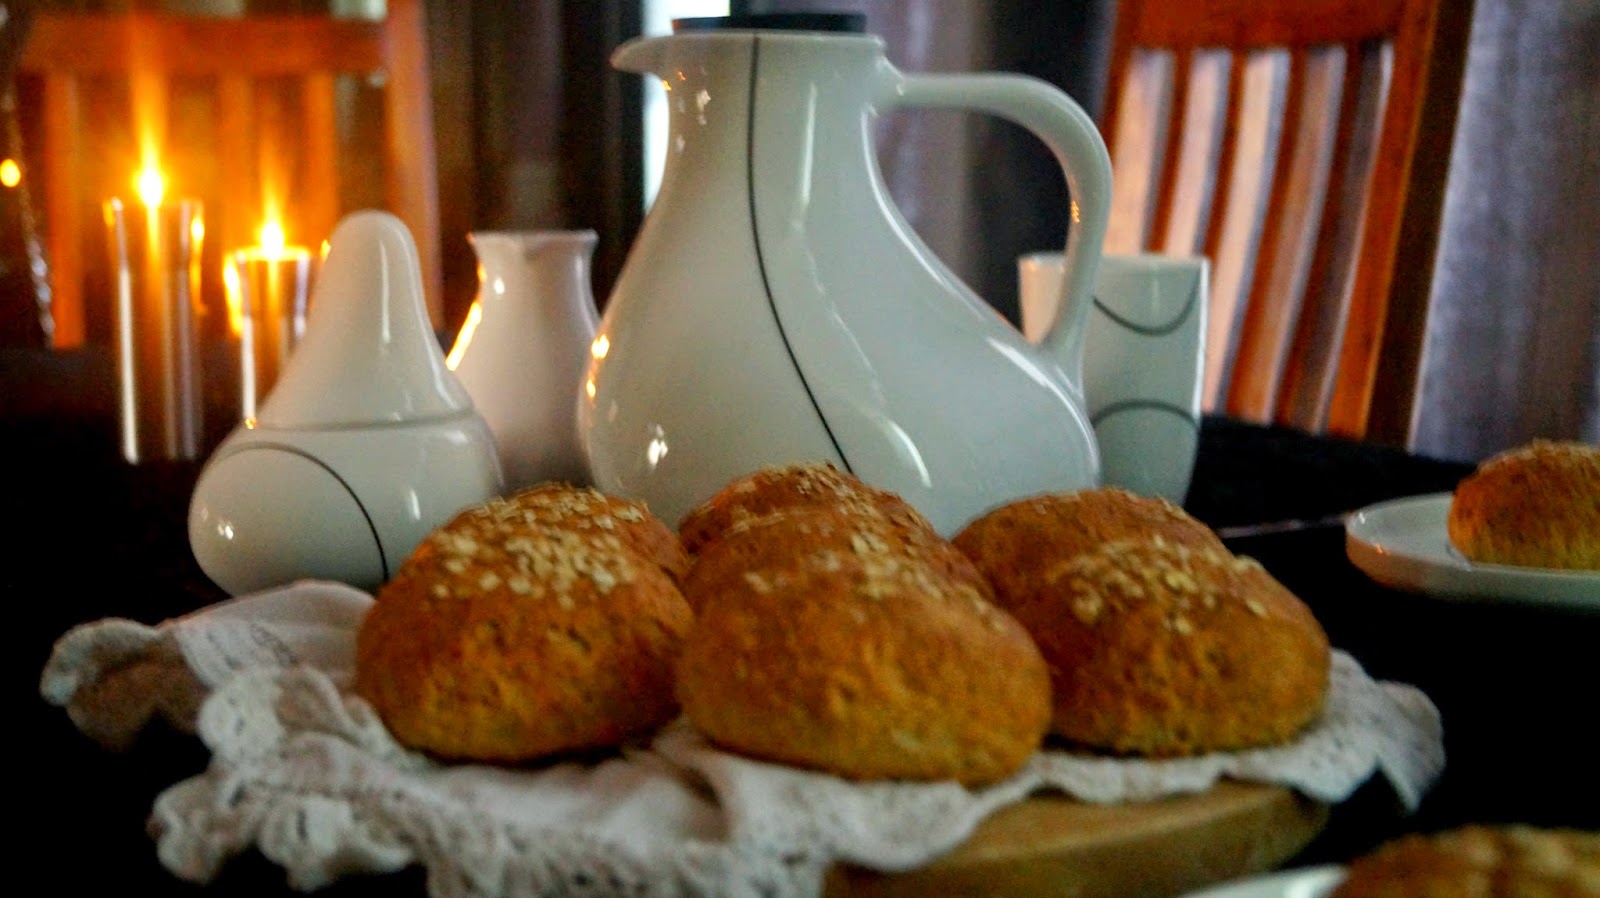 http://cupcakeluvs.blogspot.dk/2014/12/havregryns-boller-oatmeal-buns.html